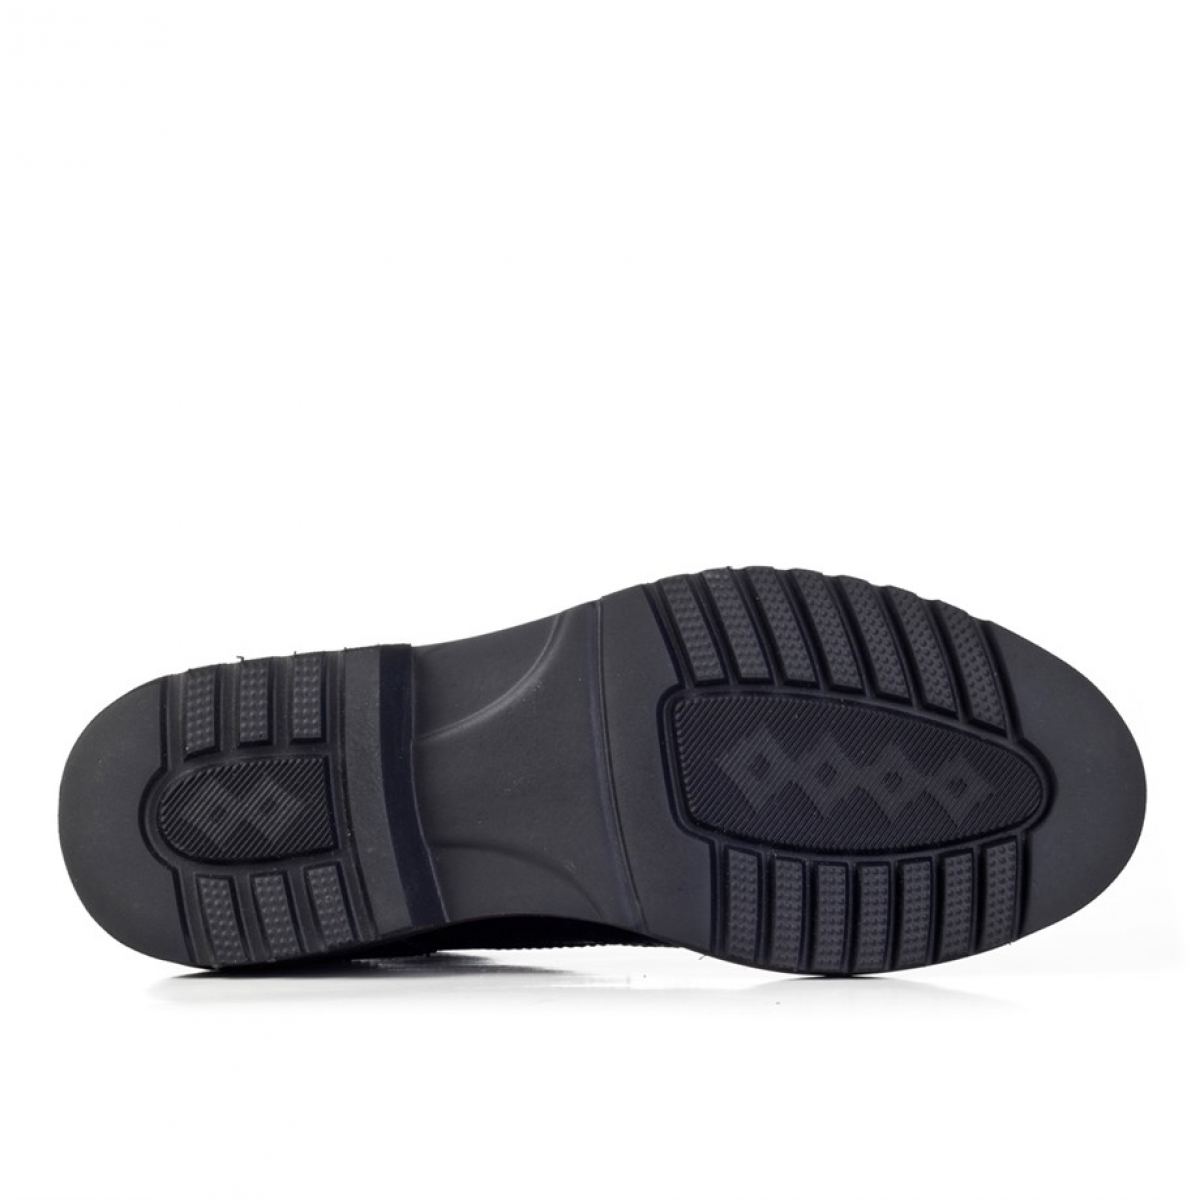 Flo Hakiki Deri Siyah Bağcıklı Erkek Klasik Ayakkabı. 7